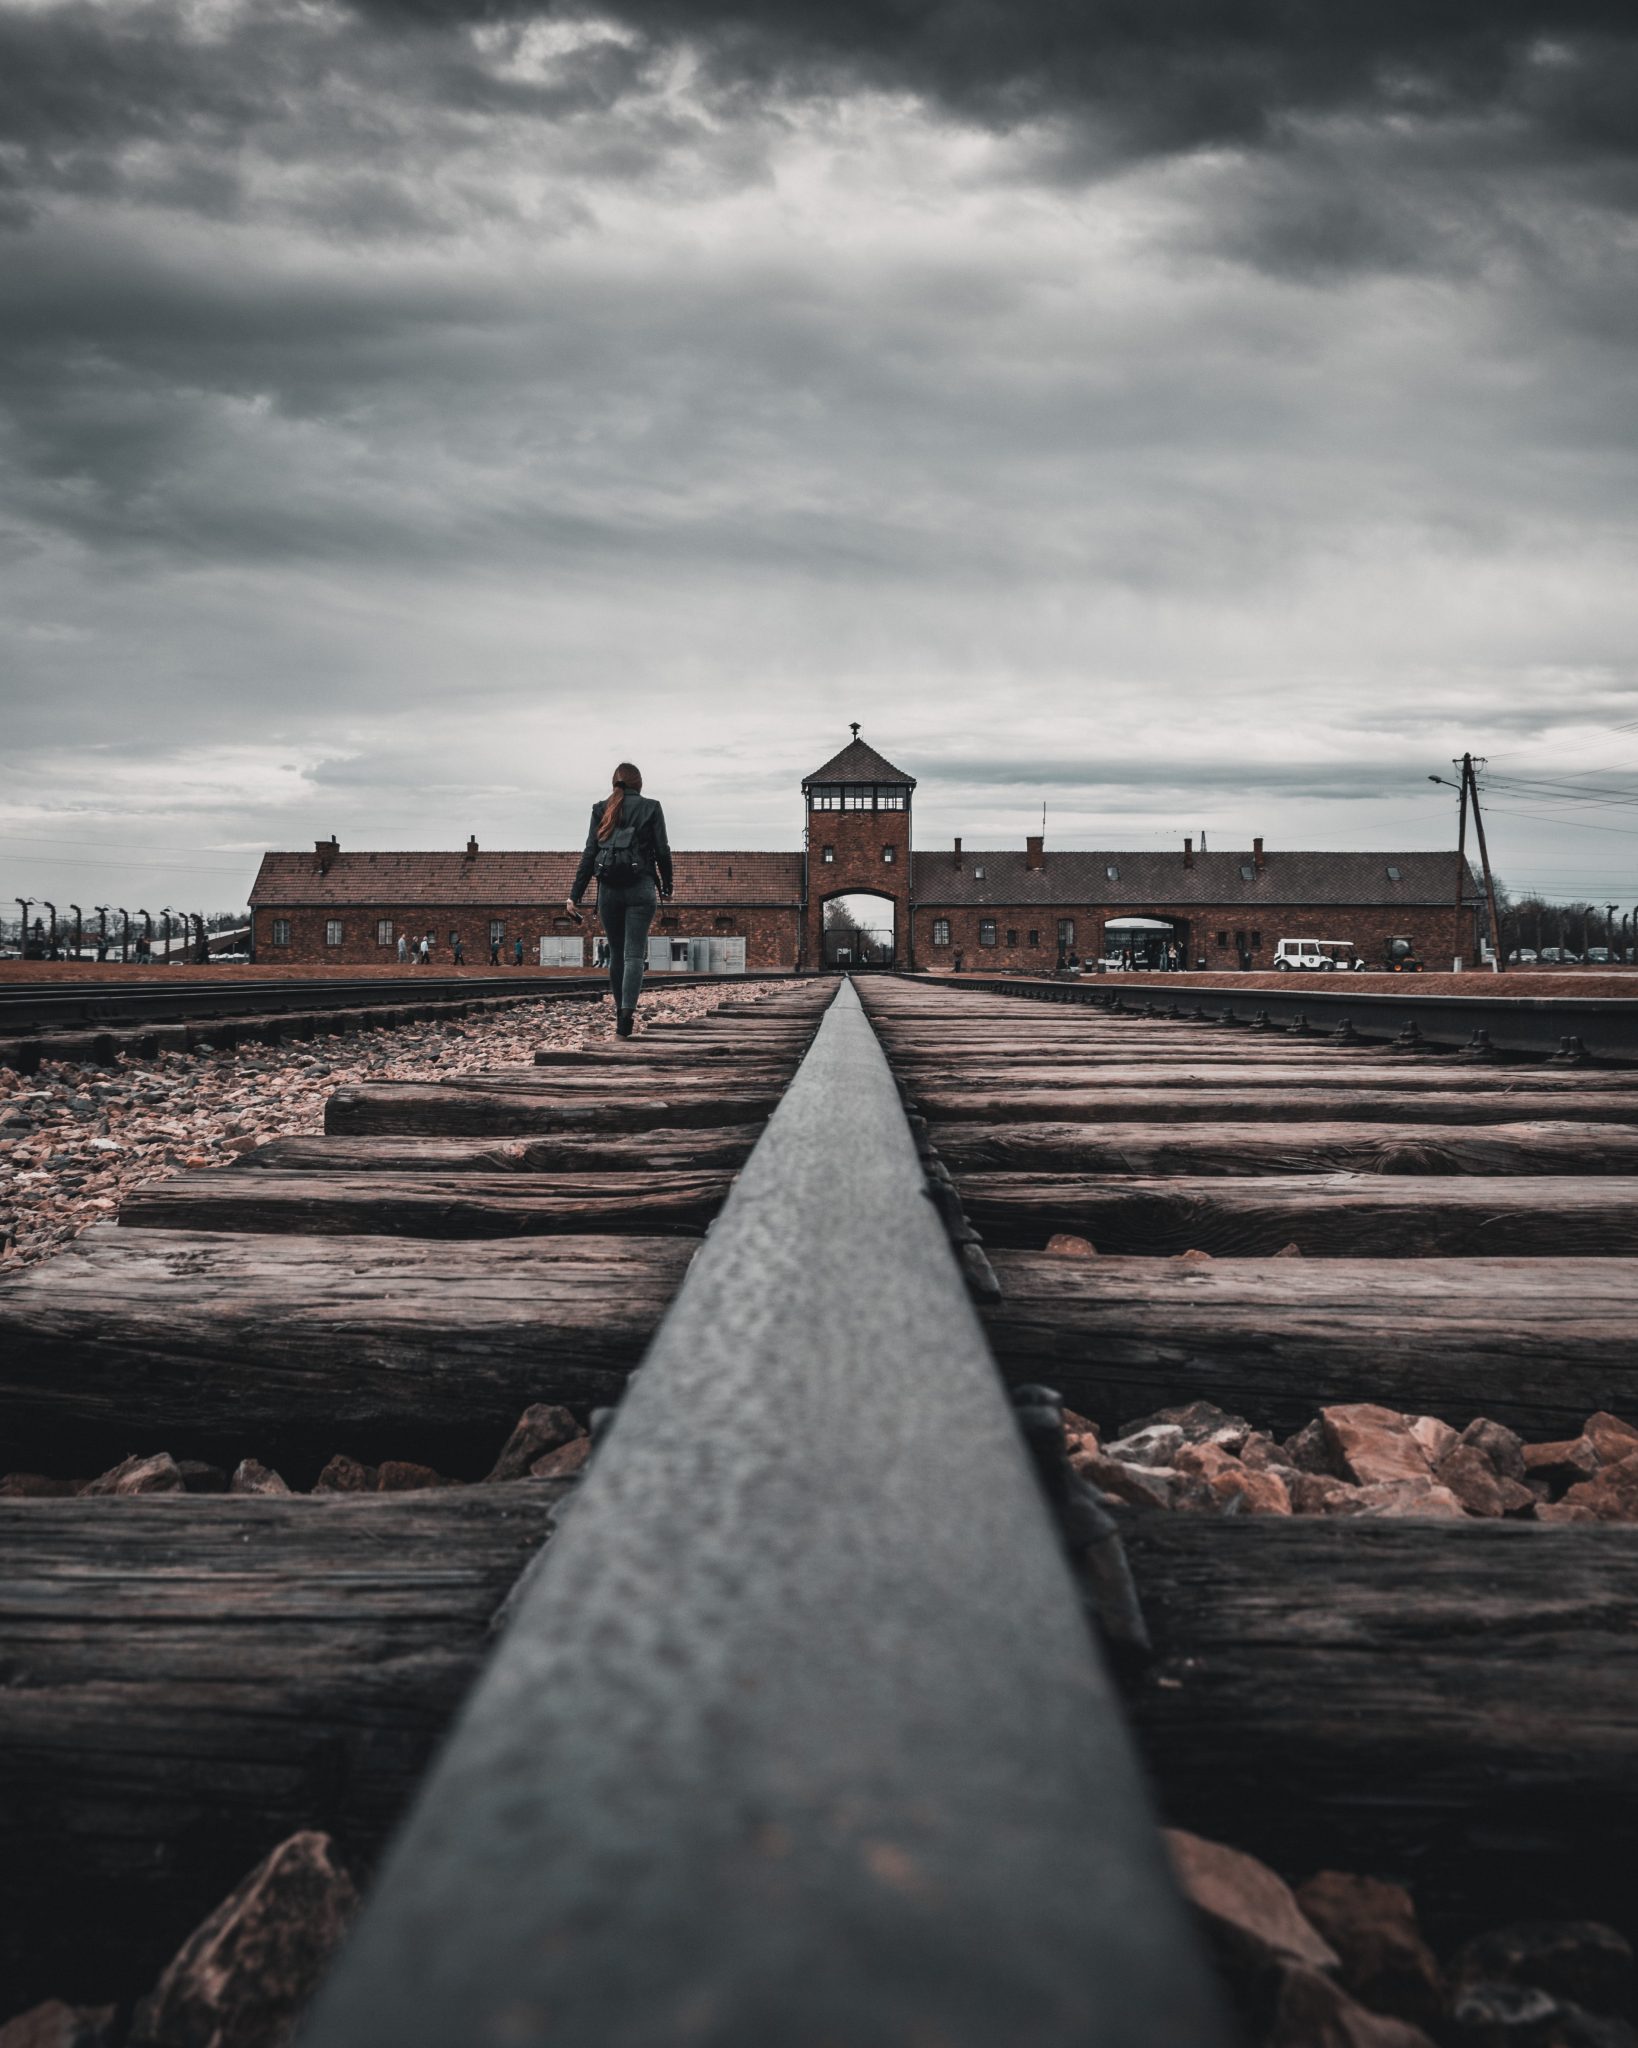 Förintelselägret Auschwitz sett i silhuett med långt perspektiv framifrån.